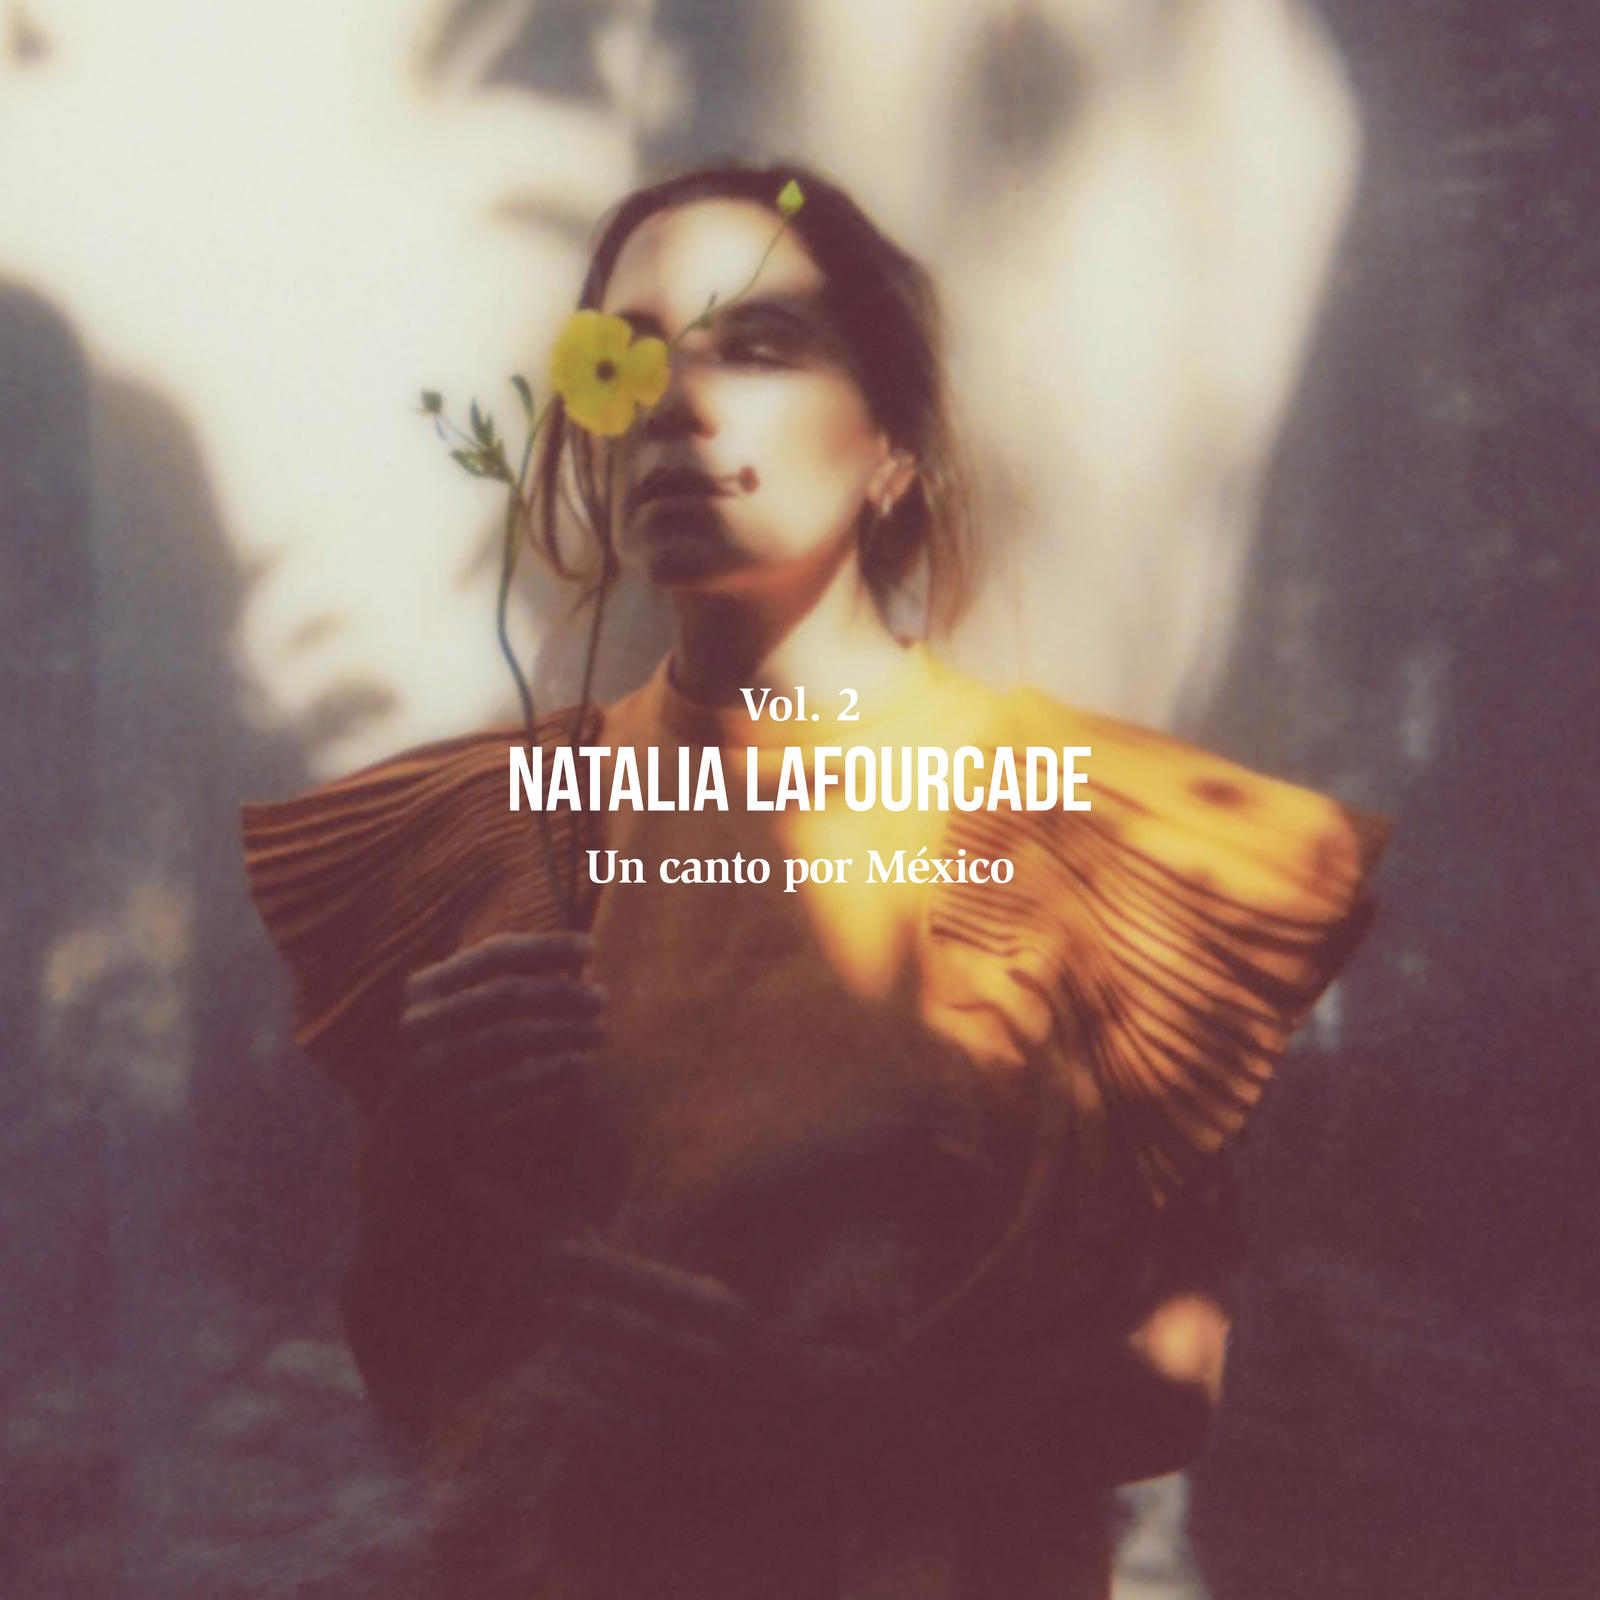 Natalia Lafourcade estrena su flamante album «Un canto por México Vol. 2»